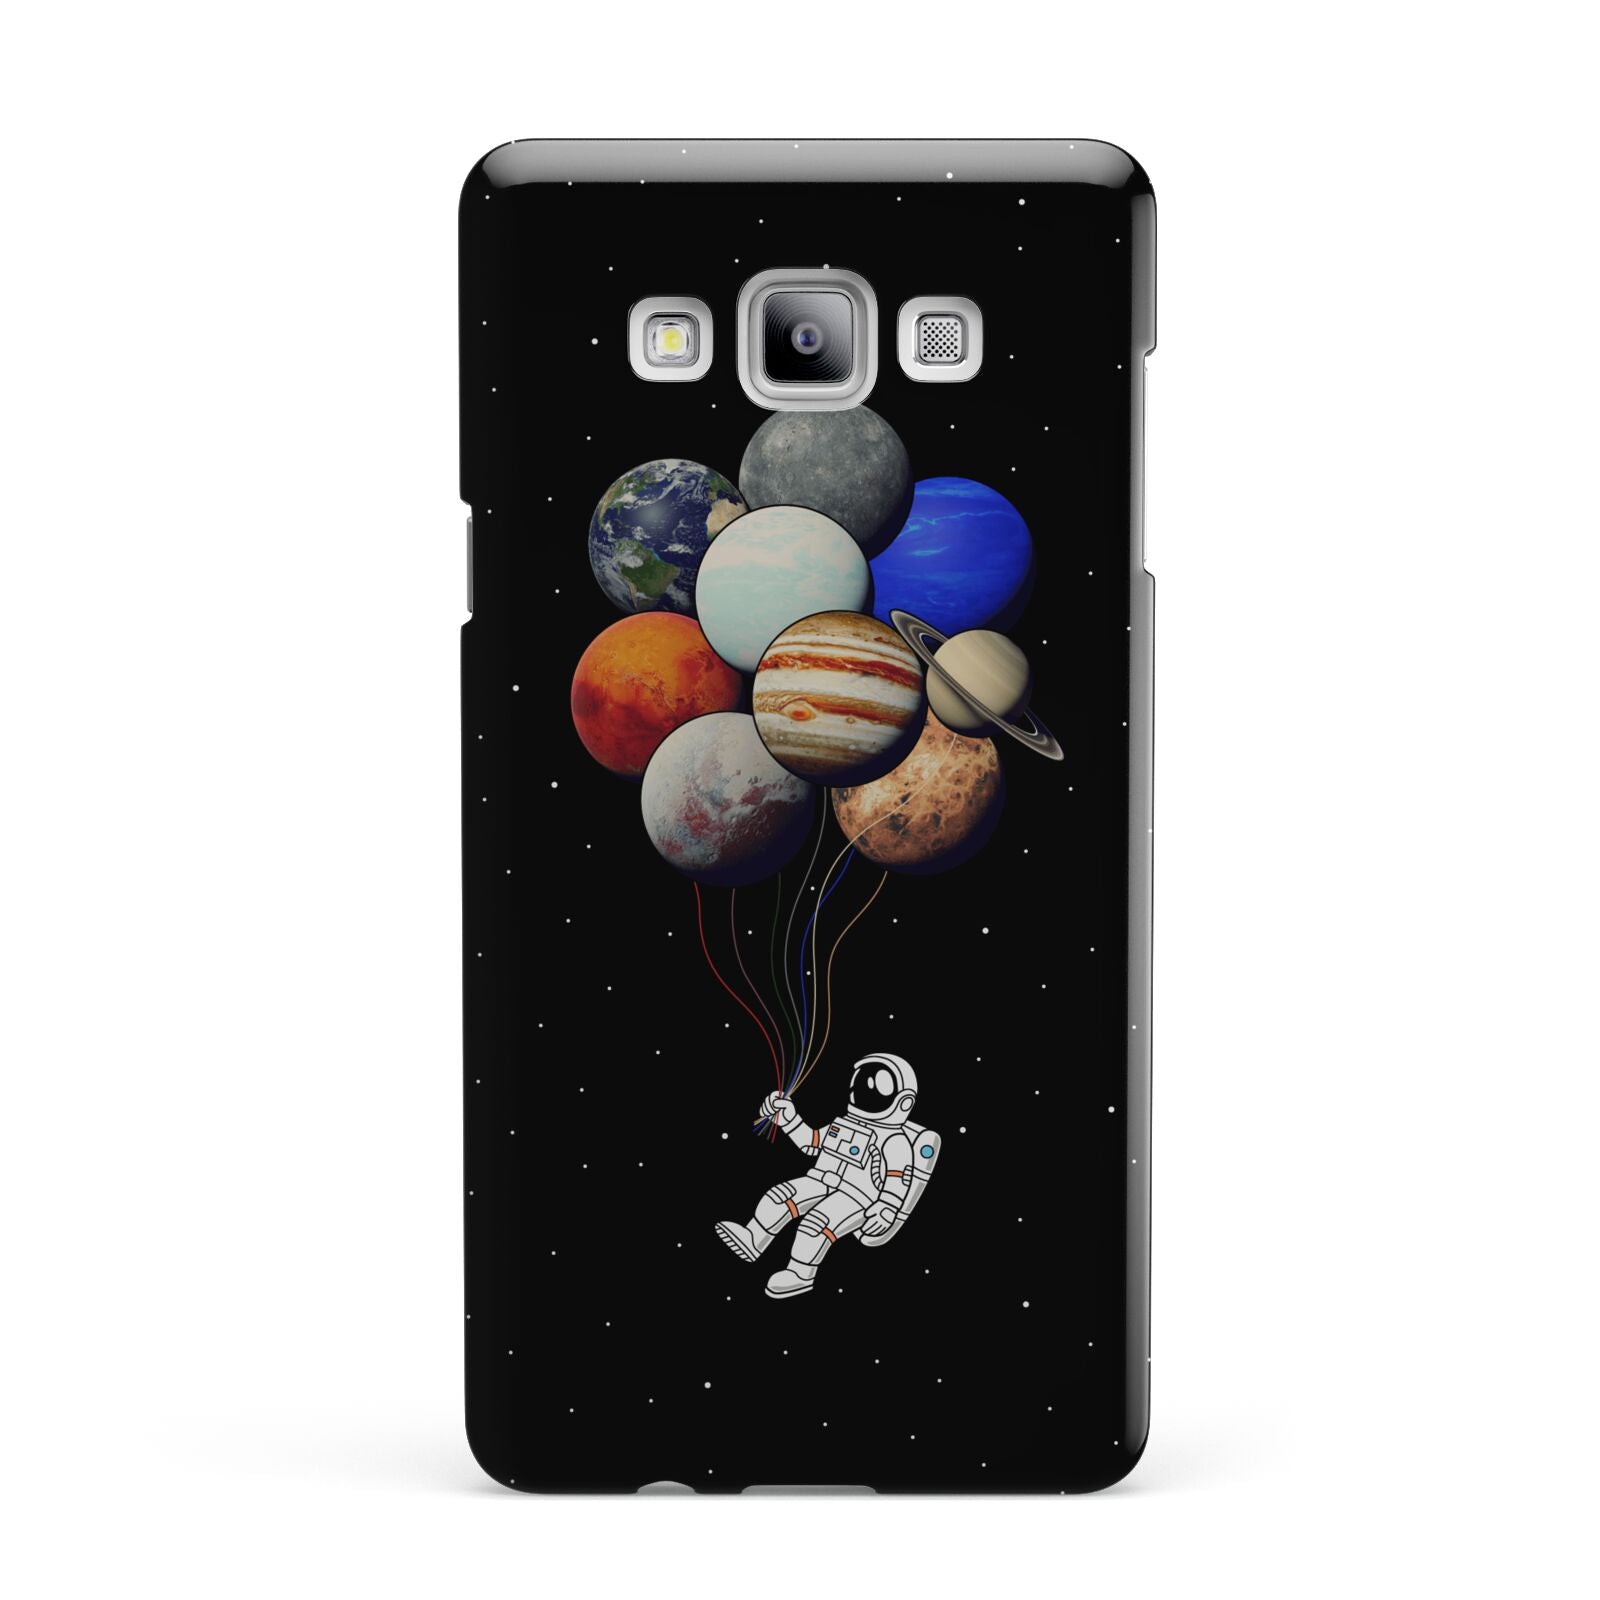 Astronaut Planet Balloons Samsung Galaxy A7 2015 Case